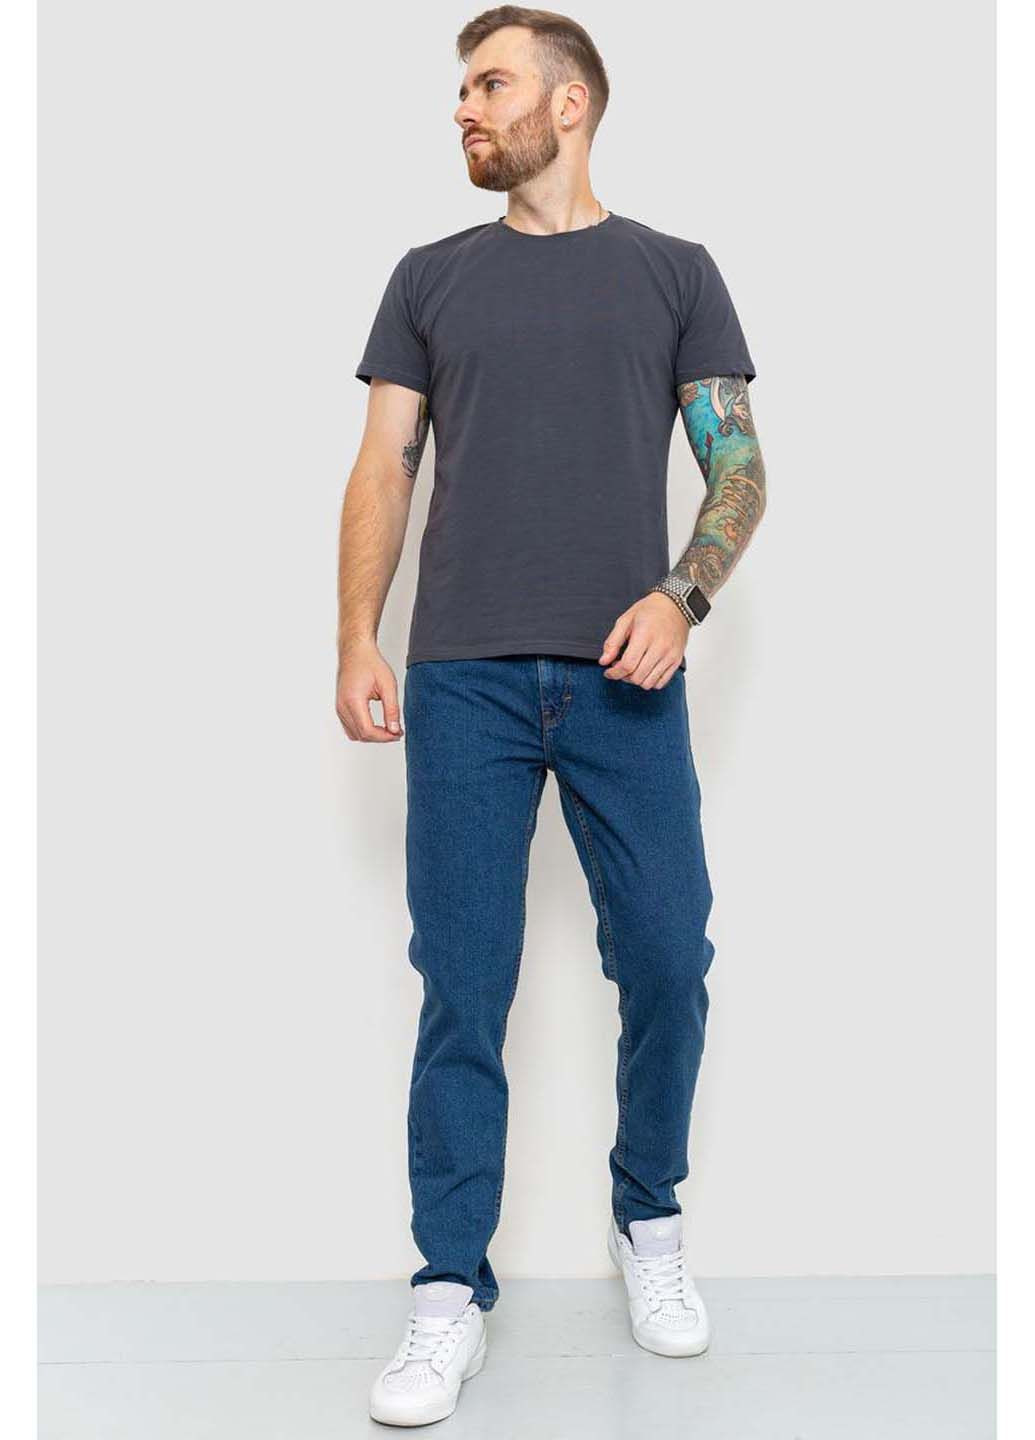 Синие демисезонные джинсы Amitex